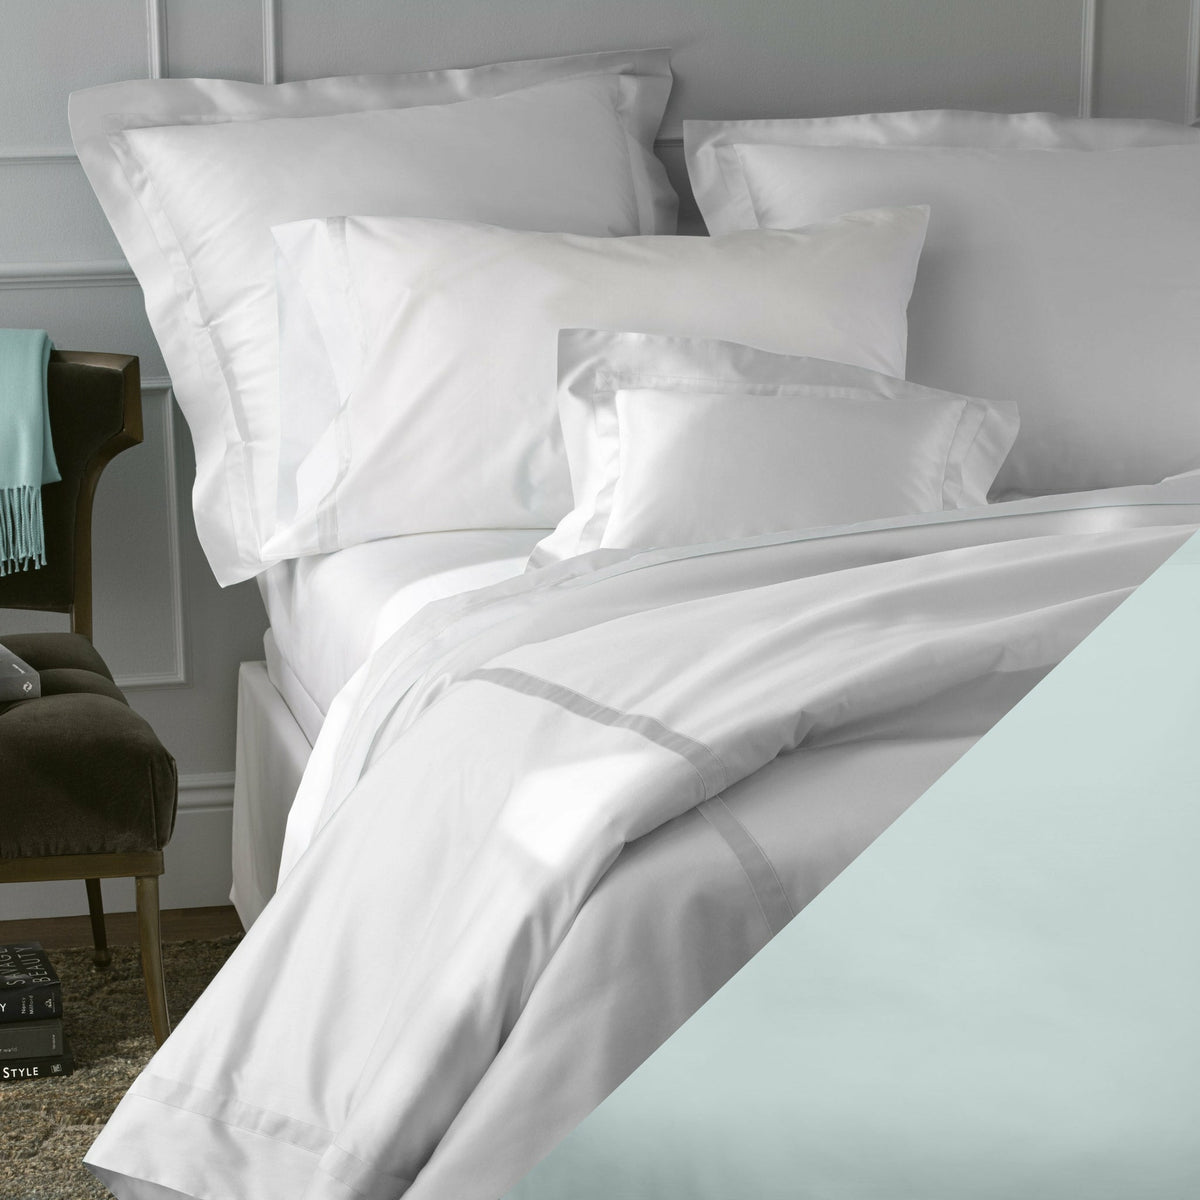 Matouk Opal Nocturne Bedding Sheets Pillow Cases Shams Fine Linens